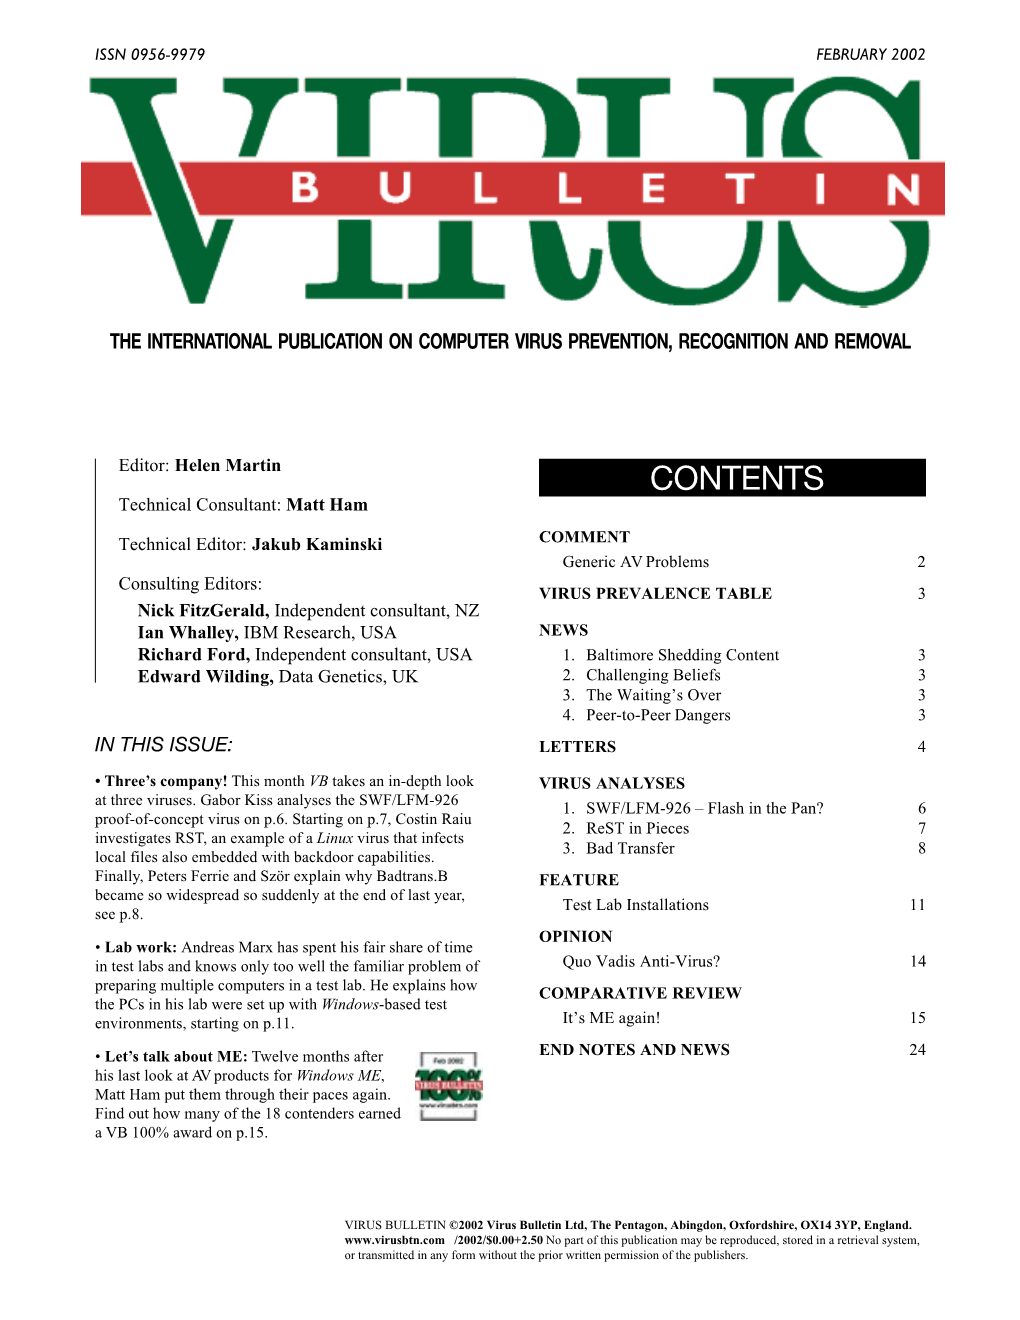 Virus Bulletin, February 2002